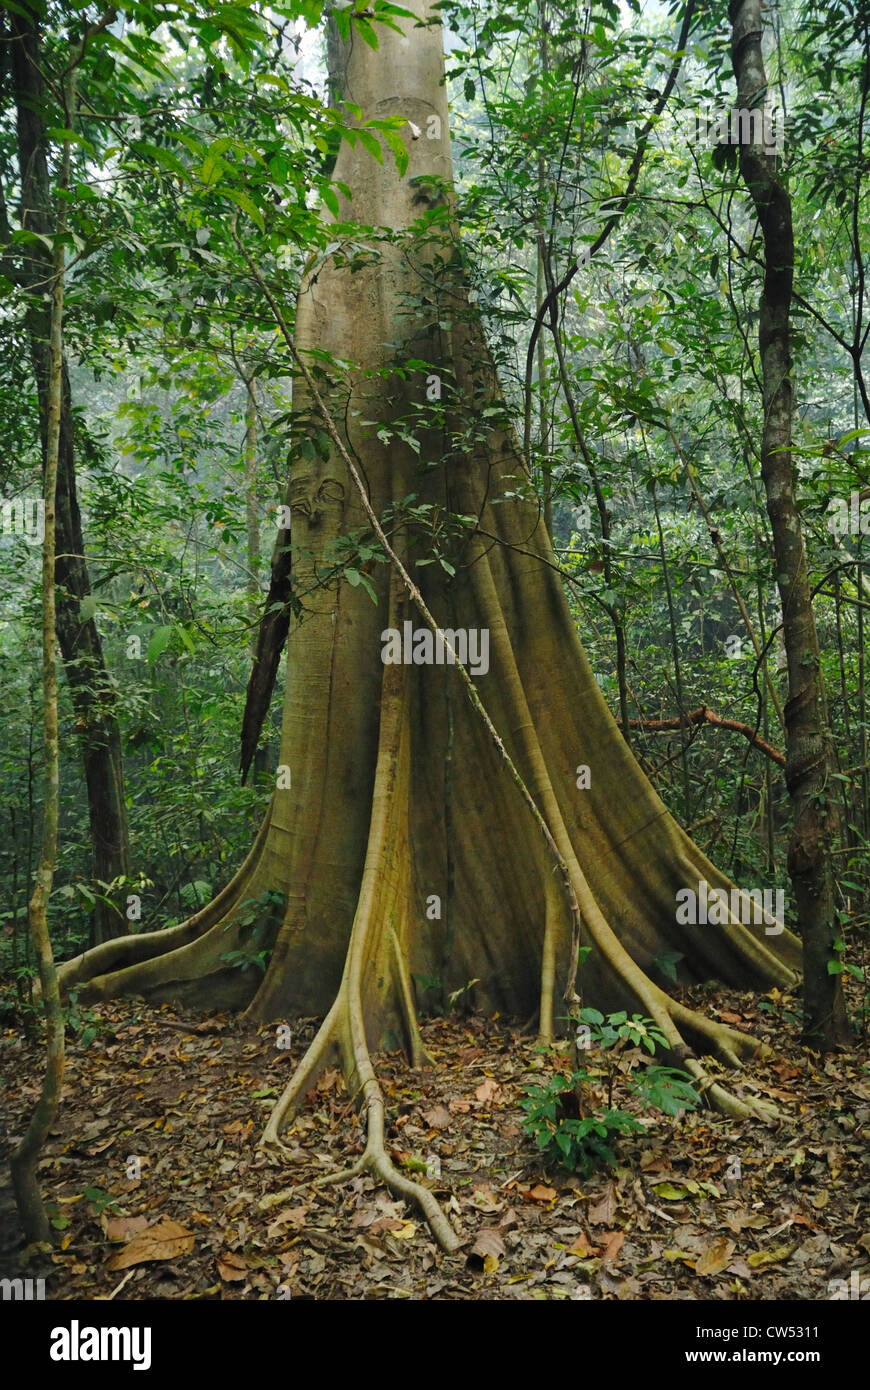 Contrefort racines dans la famille des Diptérocarpacées montrant la forêt tropicale primaire de Taksin Maharat National Park, dans l'ouest de la Thaïlande. Février 2012. Banque D'Images